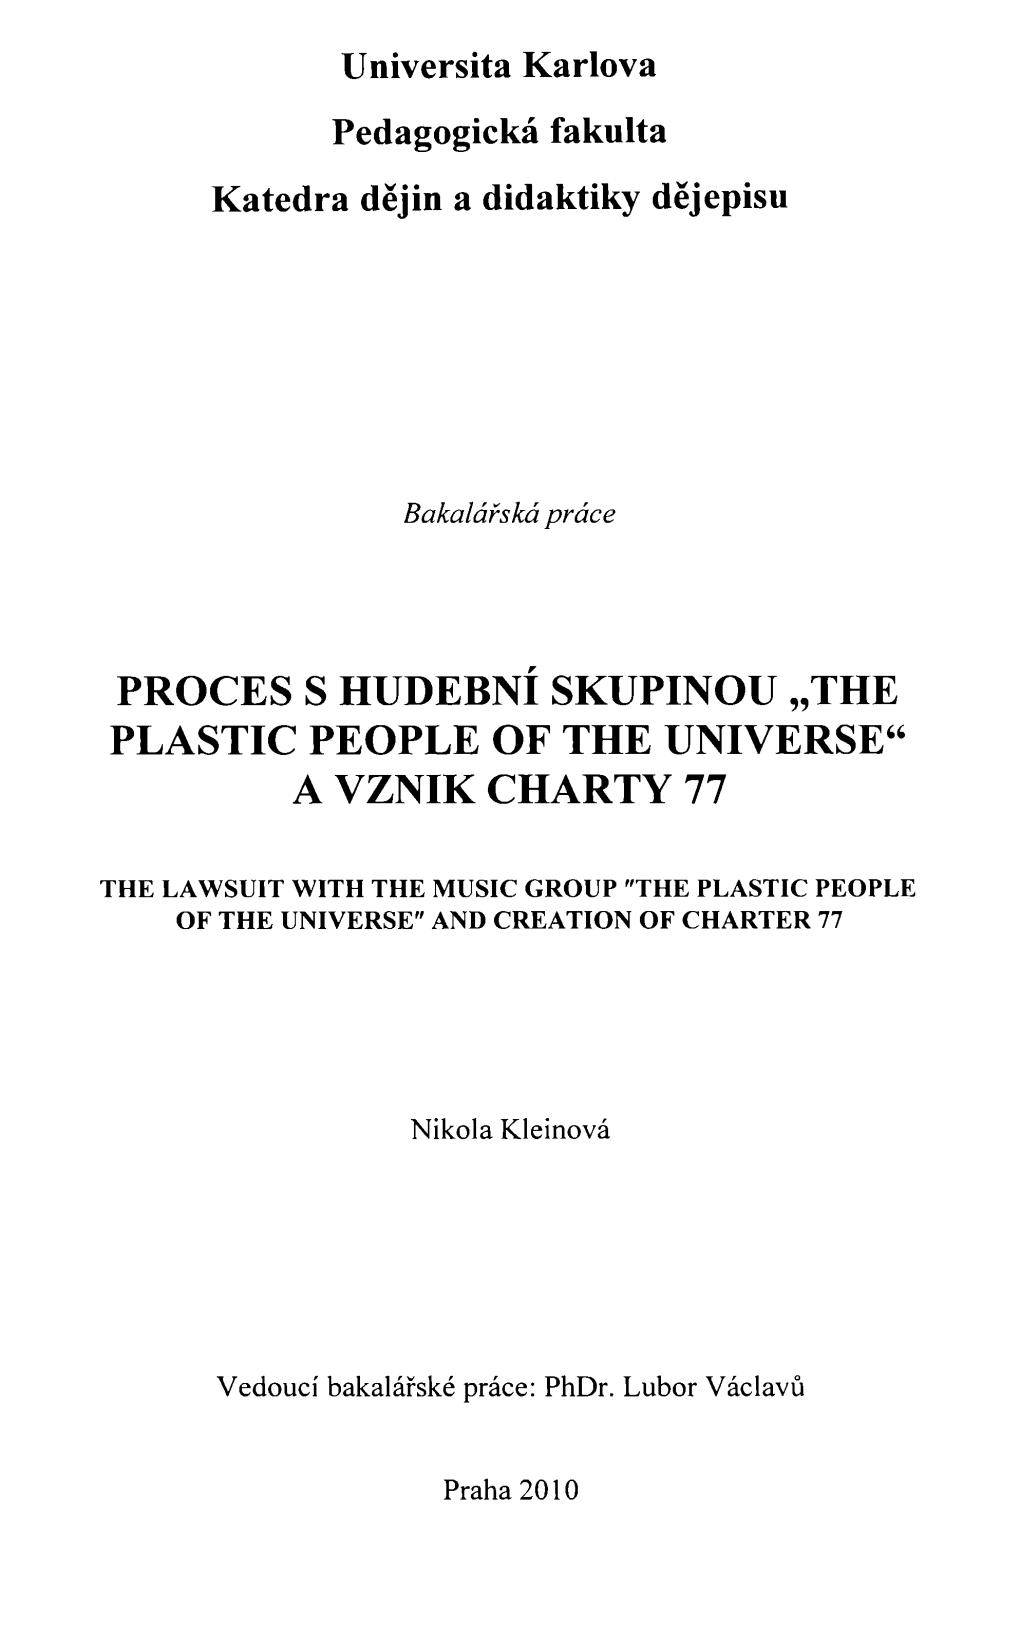 Proces S Hudební Skupinou "The Plastic People of the Universe" a Vznik Charty 77